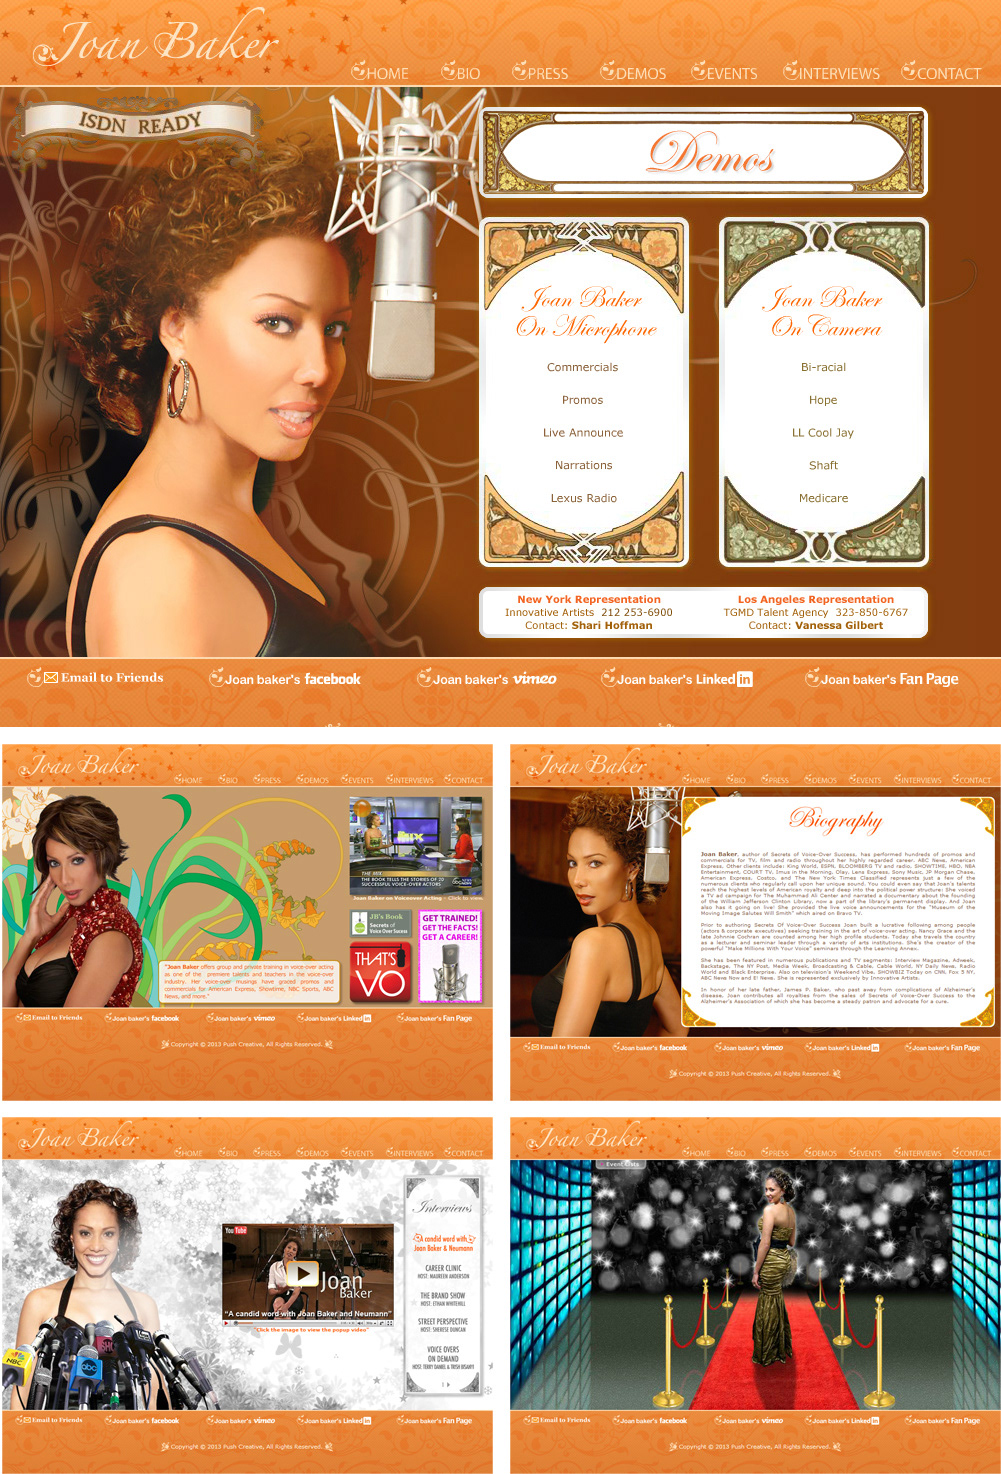 Website homepage